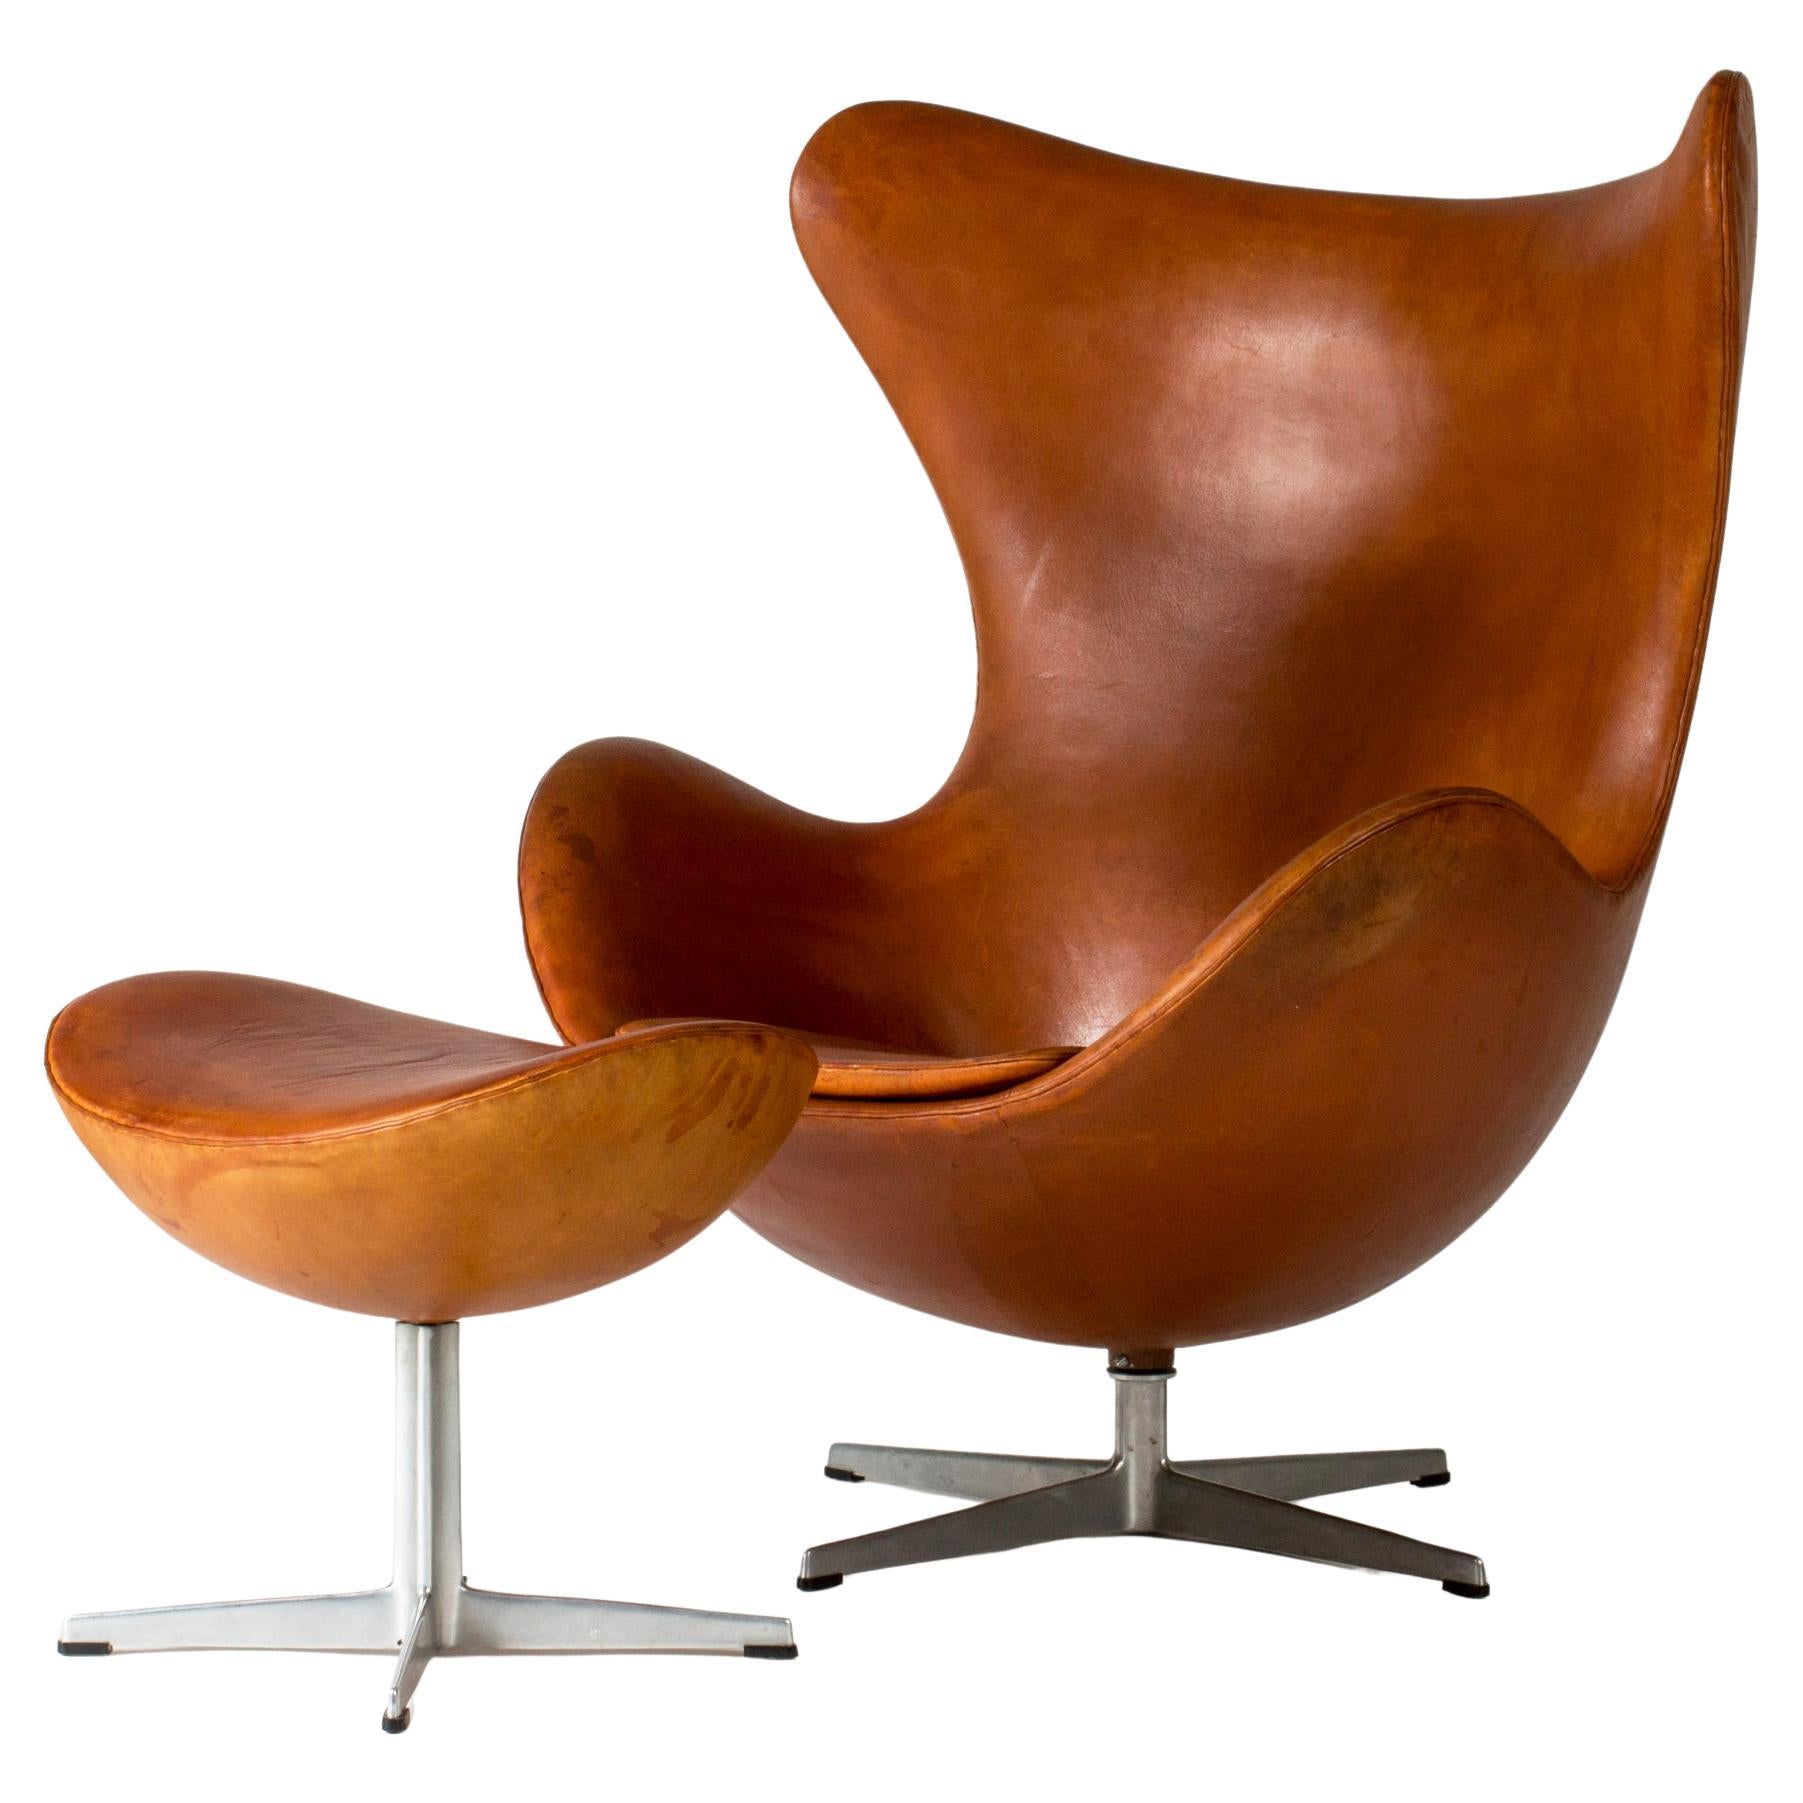 Midcentury Modern "Egg" Lounge Chair and ottoman, Arne Jacobsen, Denmark, 1950s